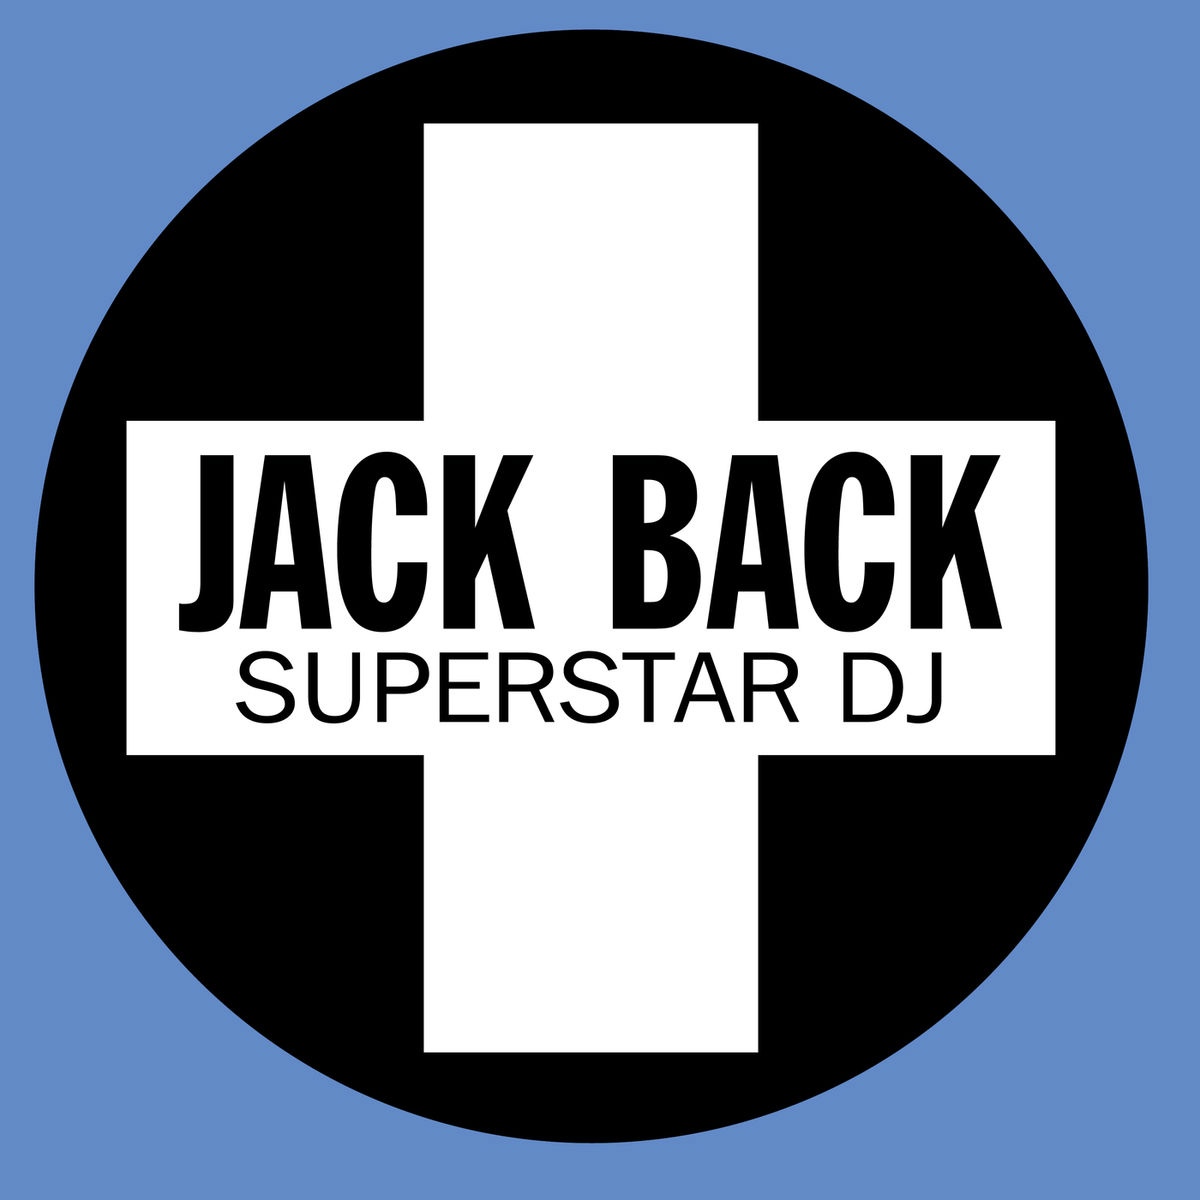 Jack Back Superstar DJ cover artwork